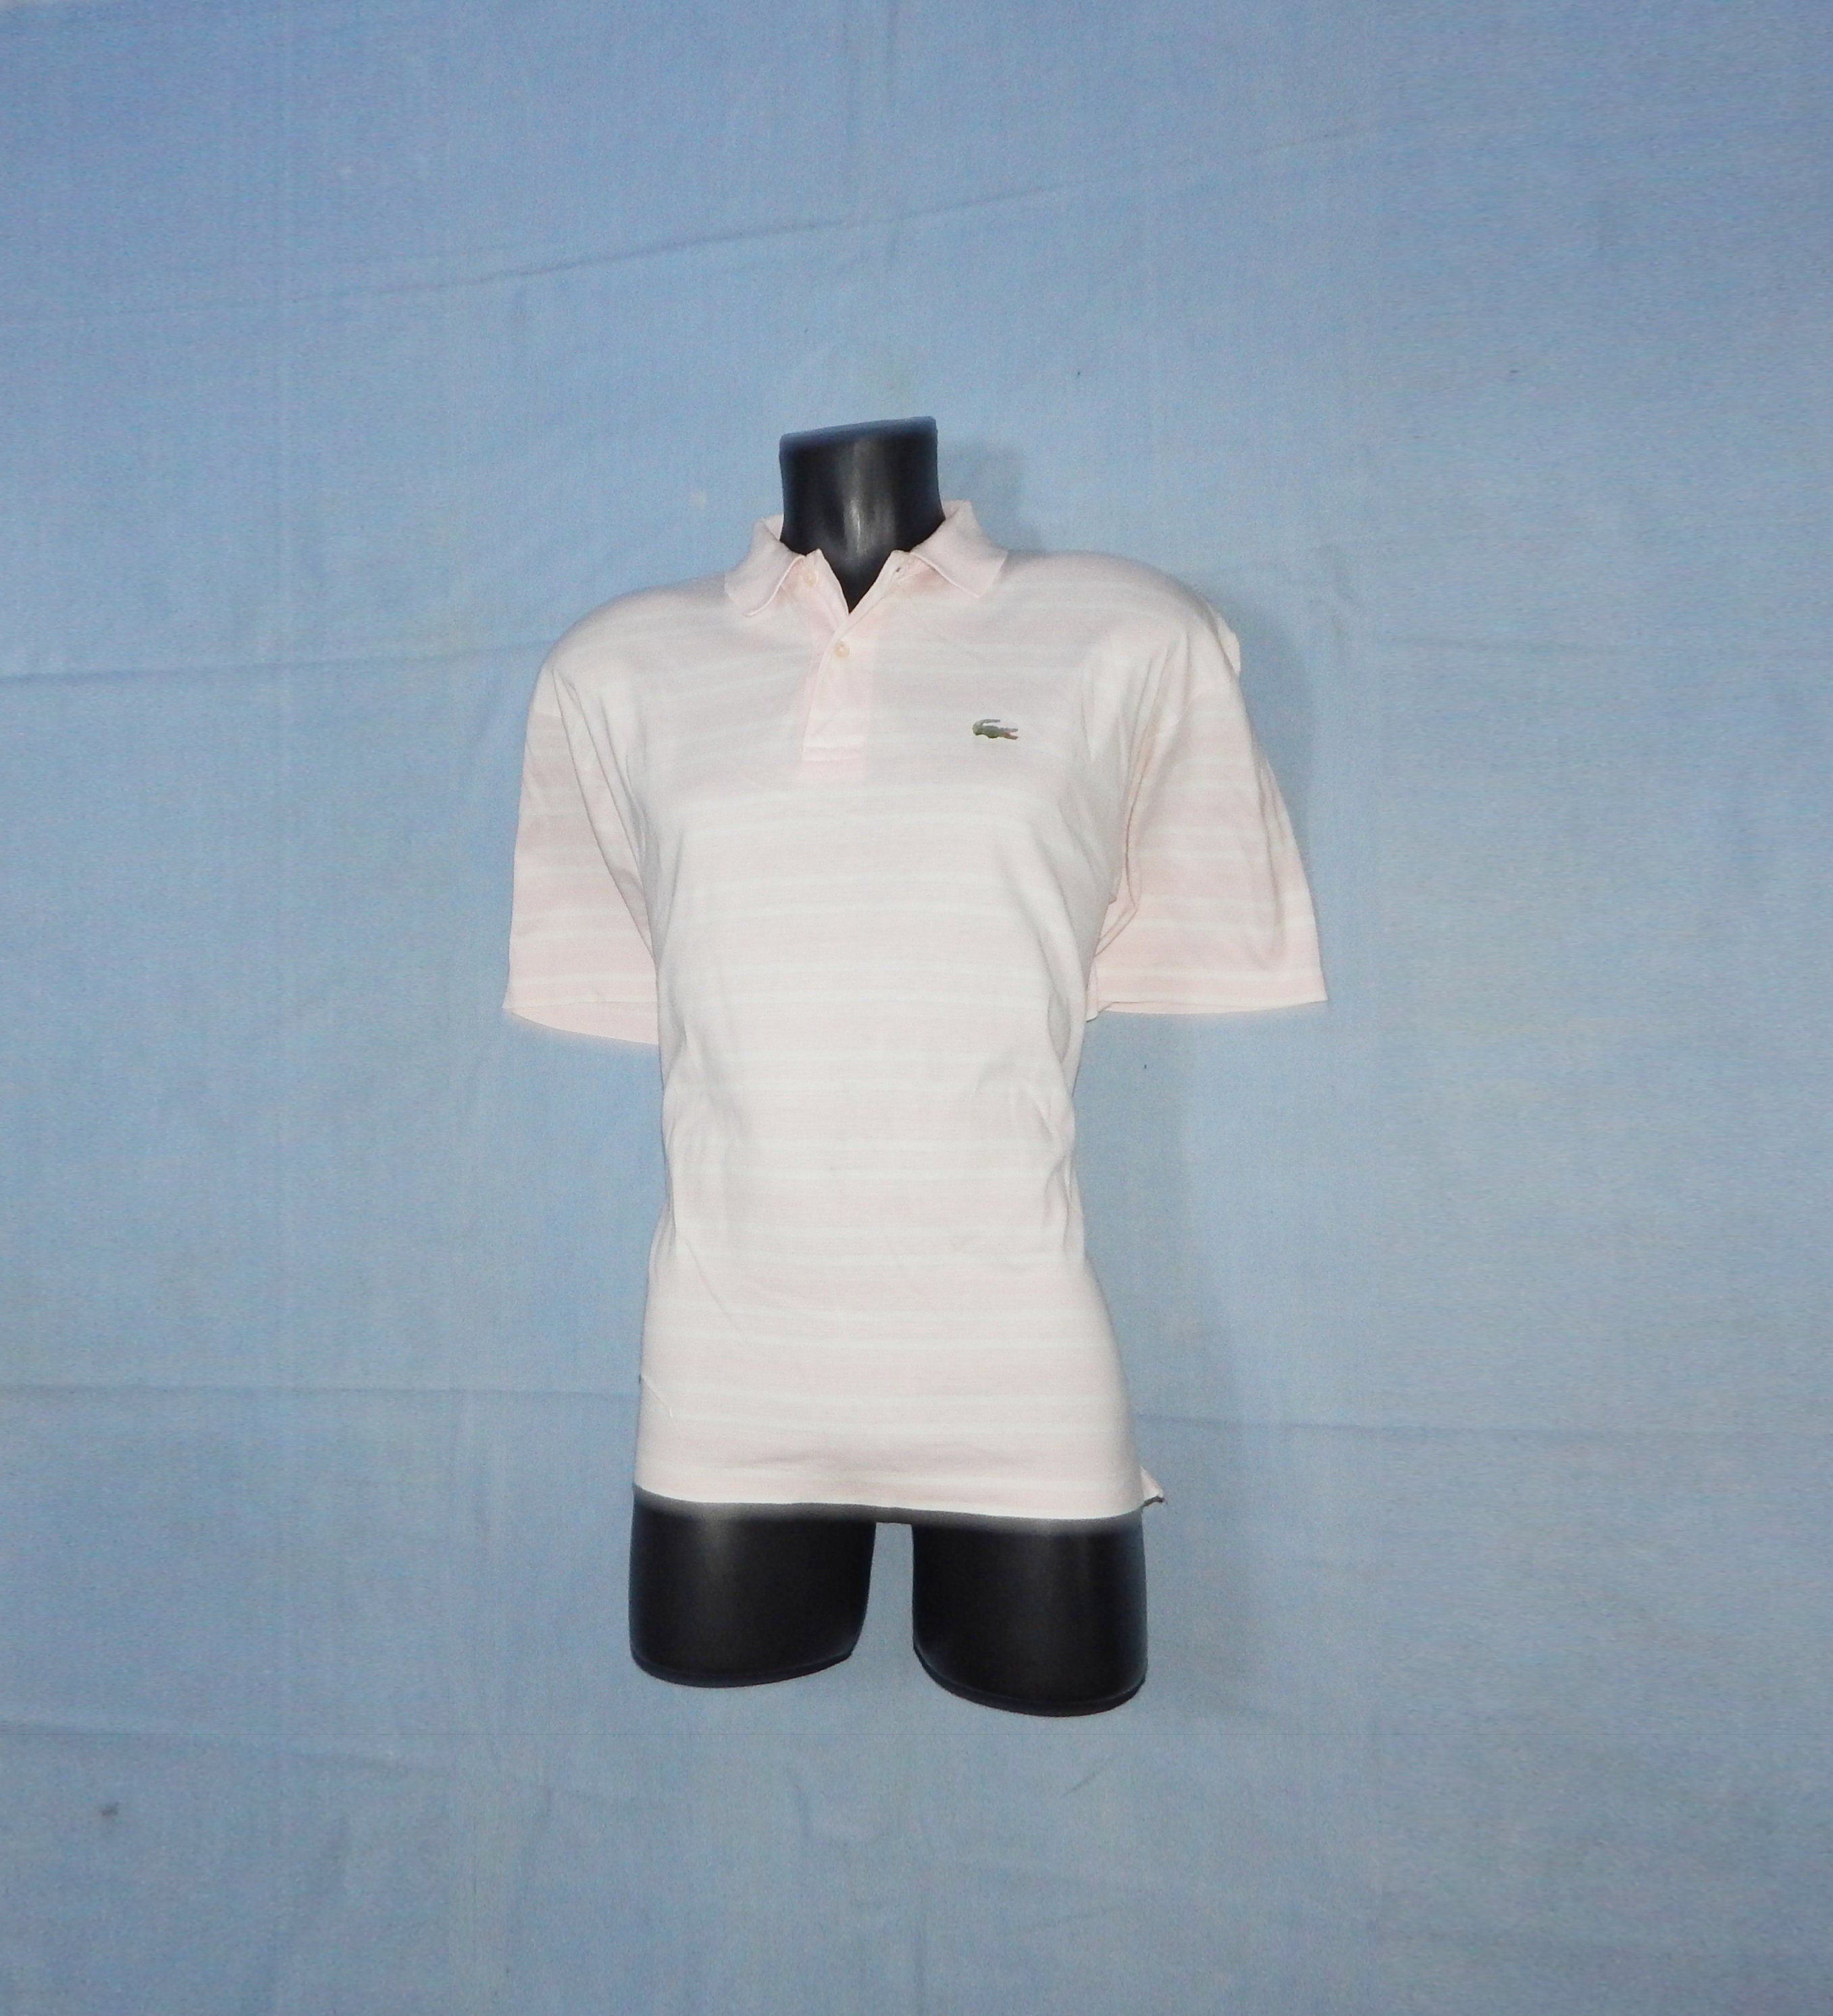 Vintage 70s Men's Tennis Polo Shirt. Label